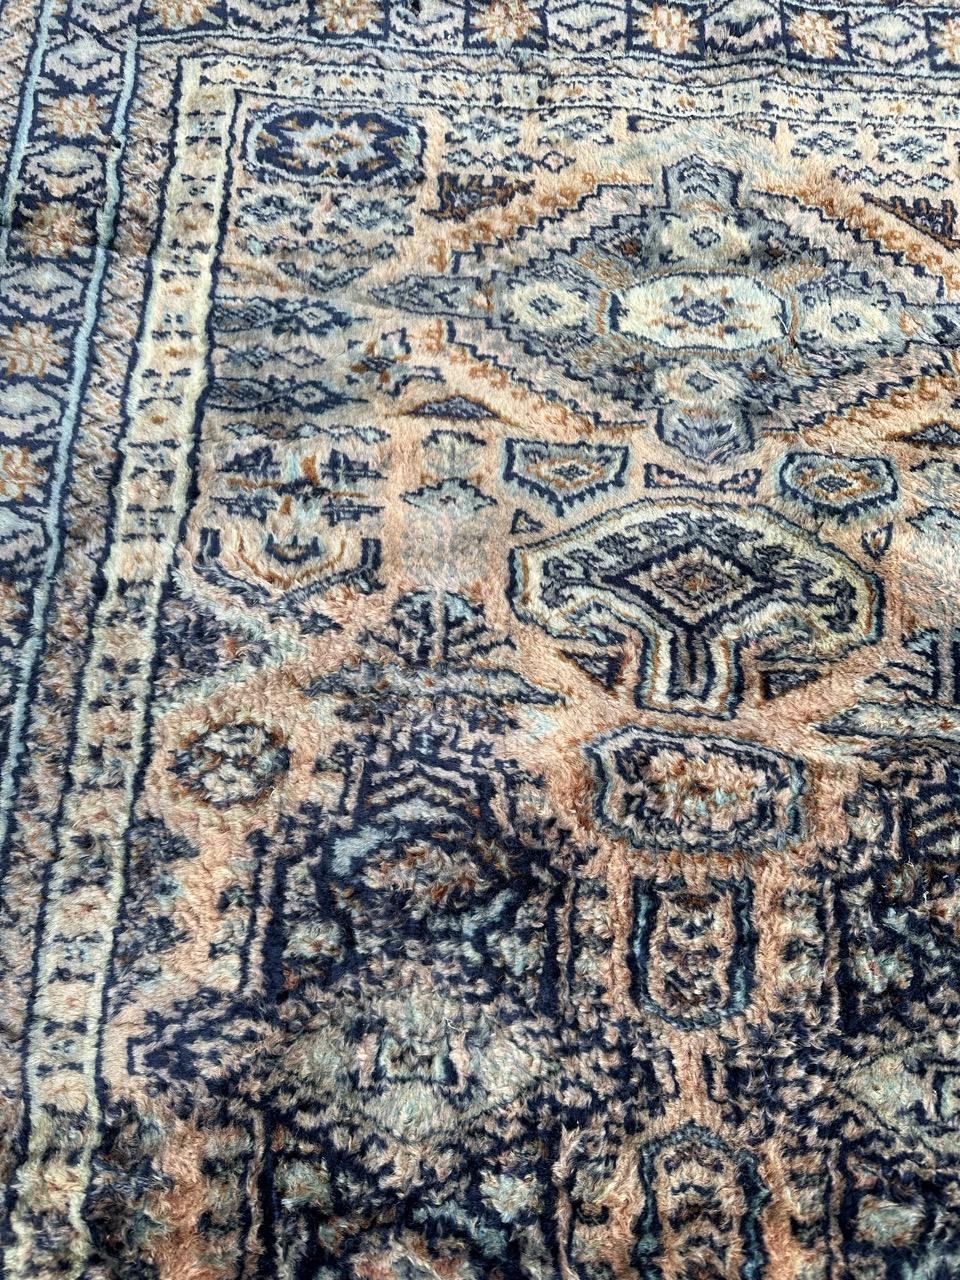 Schöner pakistanischer Teppich aus dem späten 20. Jahrhundert mit einem turkmenischen Stammesmuster und schönen Farben in Blaugrau, Orange, Blau und Weiß. Vollständig handgeknüpft mit Wolle auf Baumwollbasis.

✨✨✨
